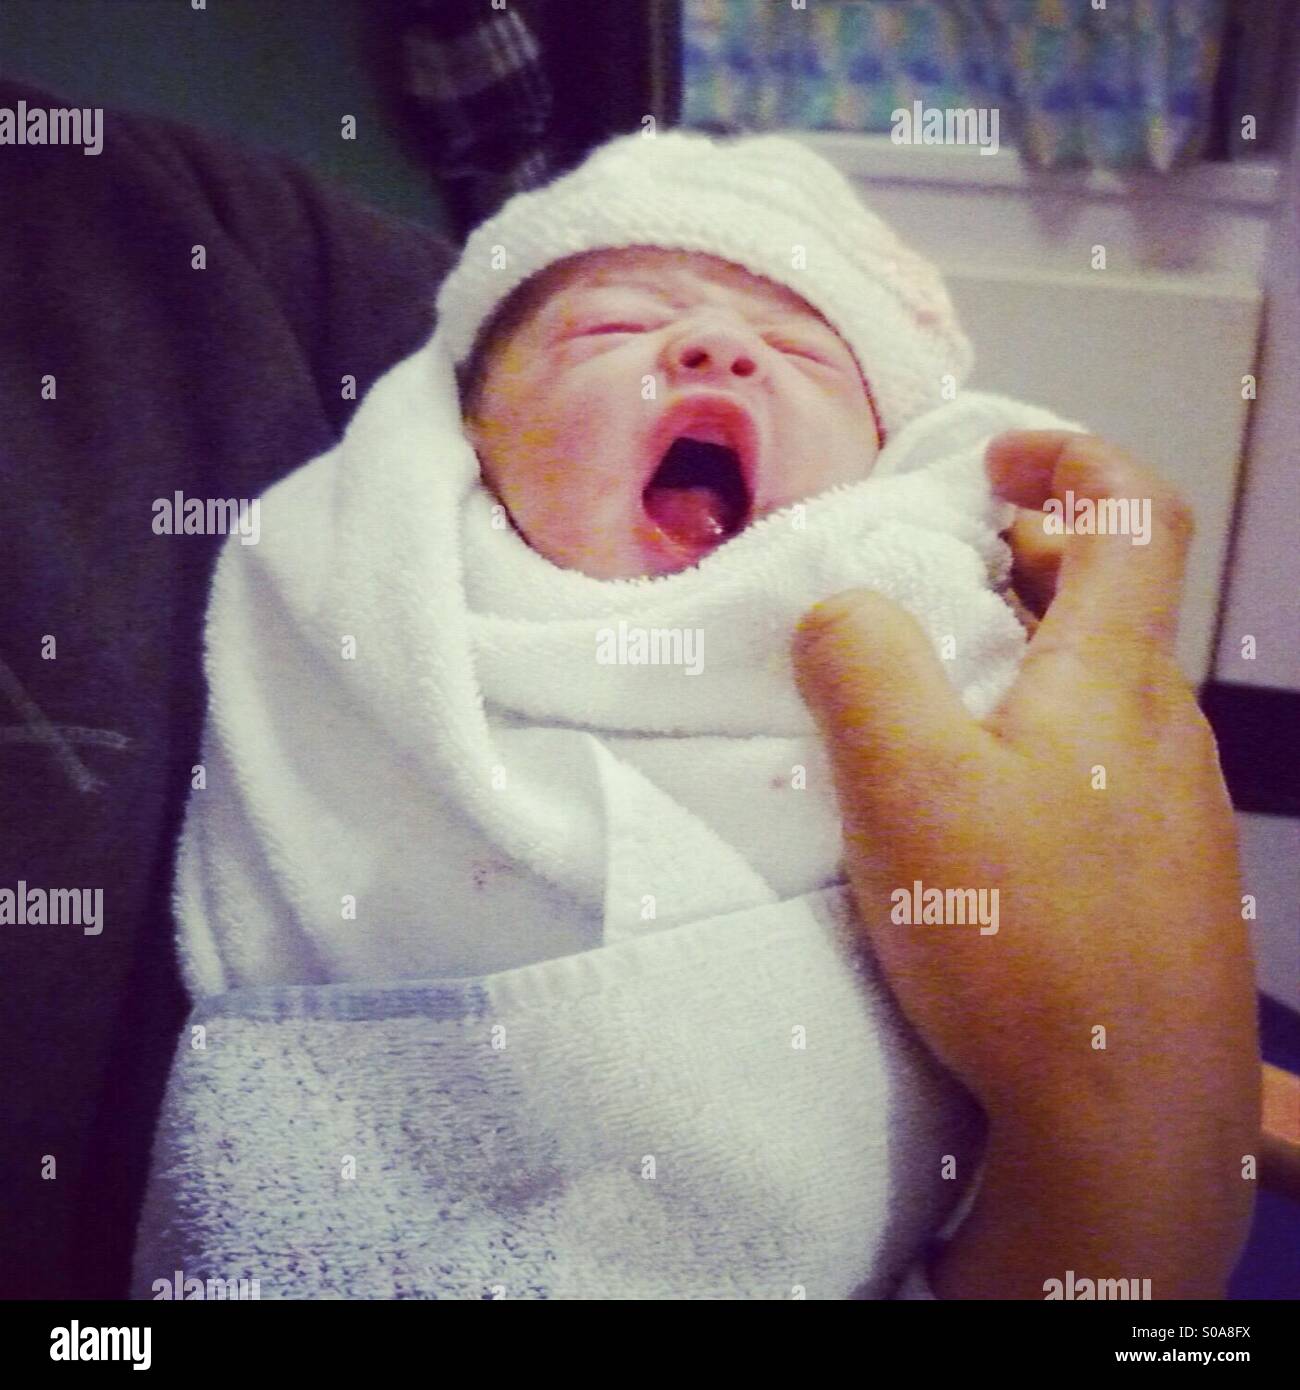 Newborn Baby Yawning Stock Photo